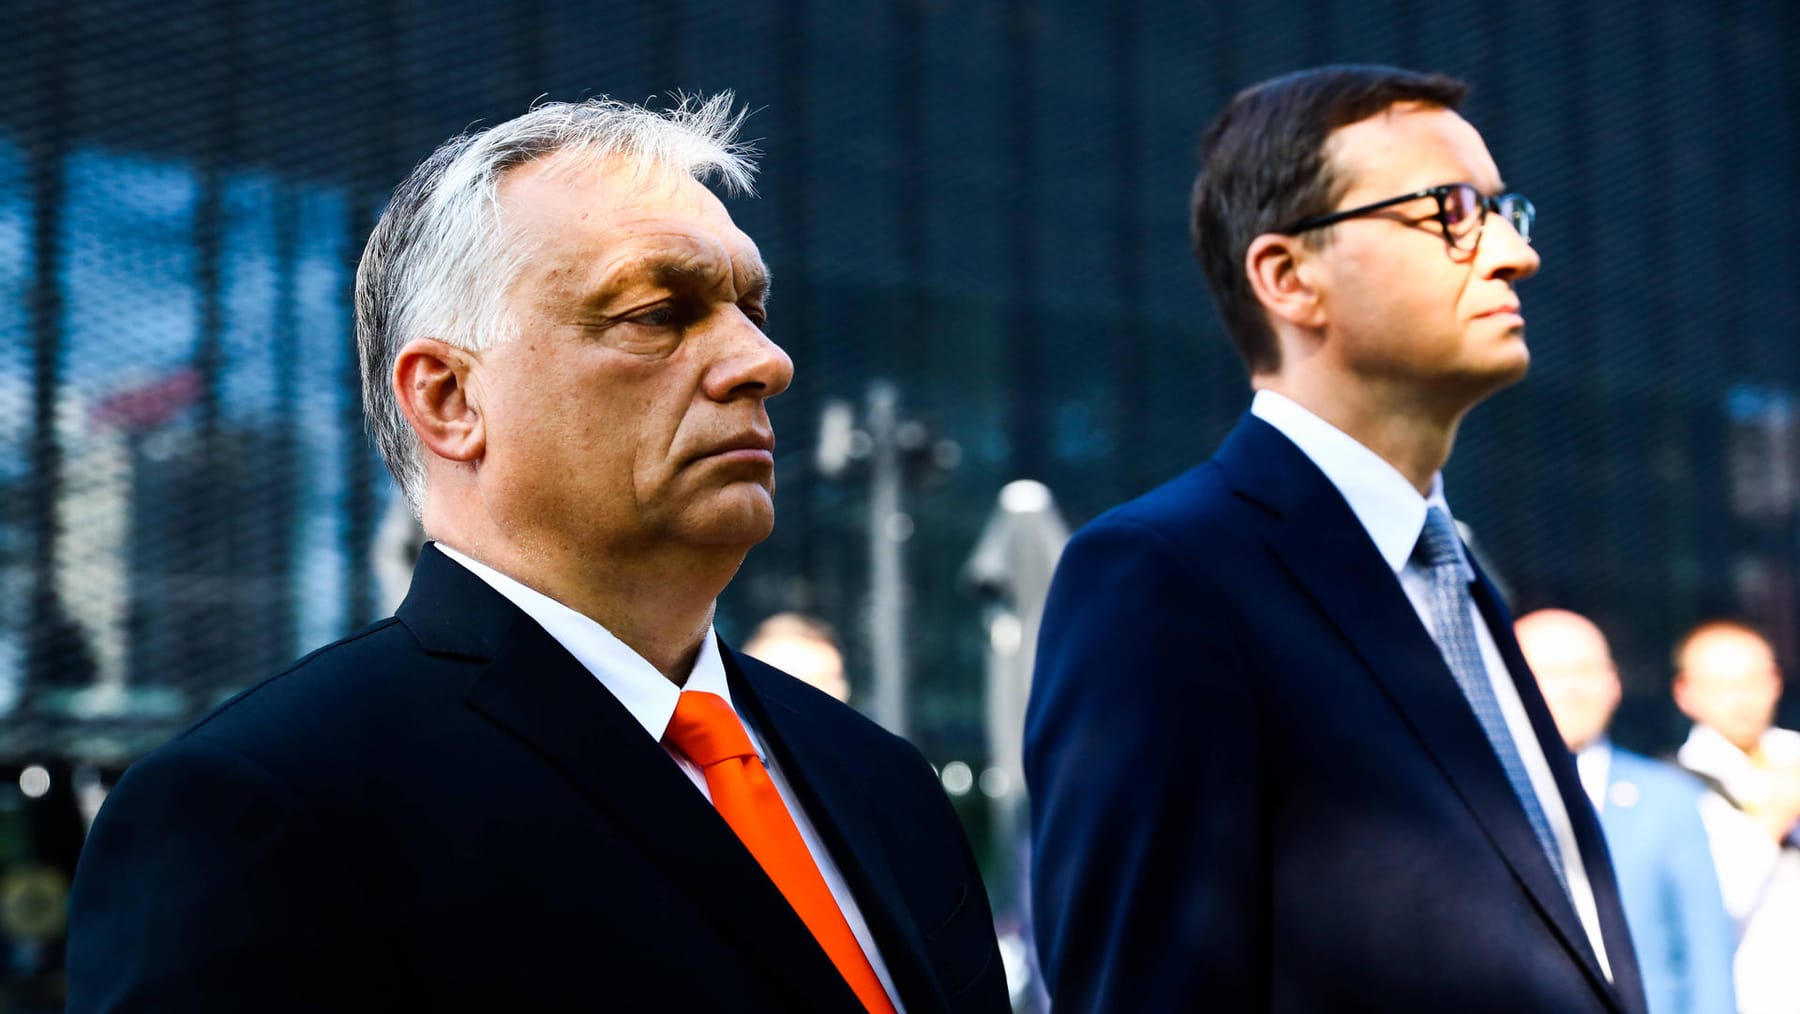 UE stwierdza poważne braki w zakresie praworządności w Polsce i na Węgrzech: sądownictwo i korupcja